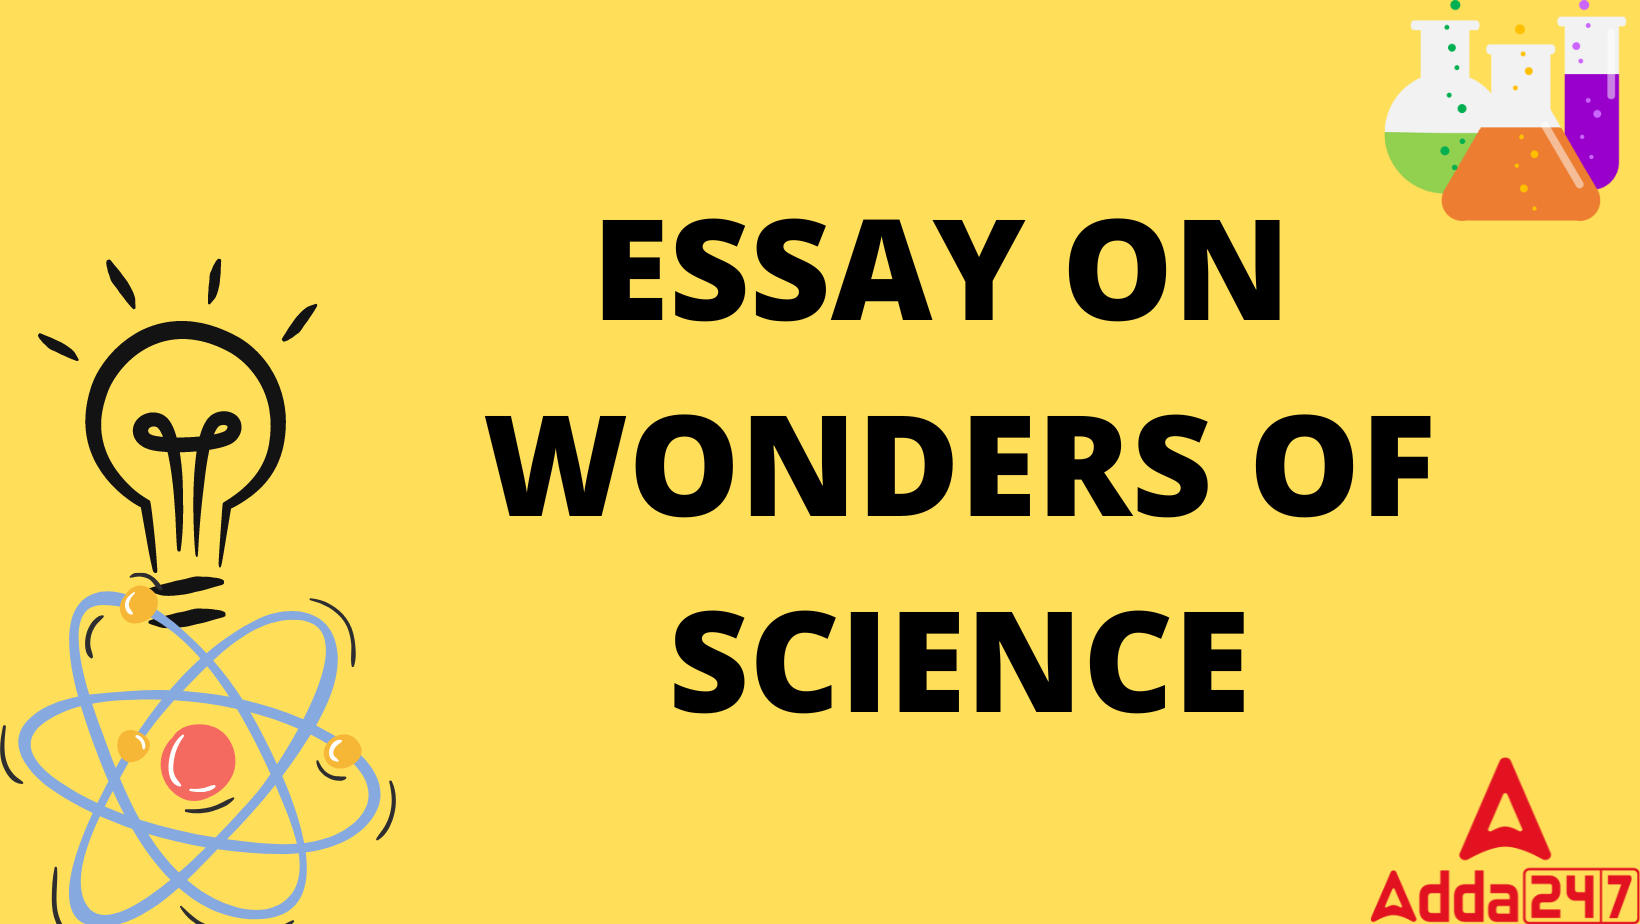 ESSAY ON WONDERS OF SCIENCE